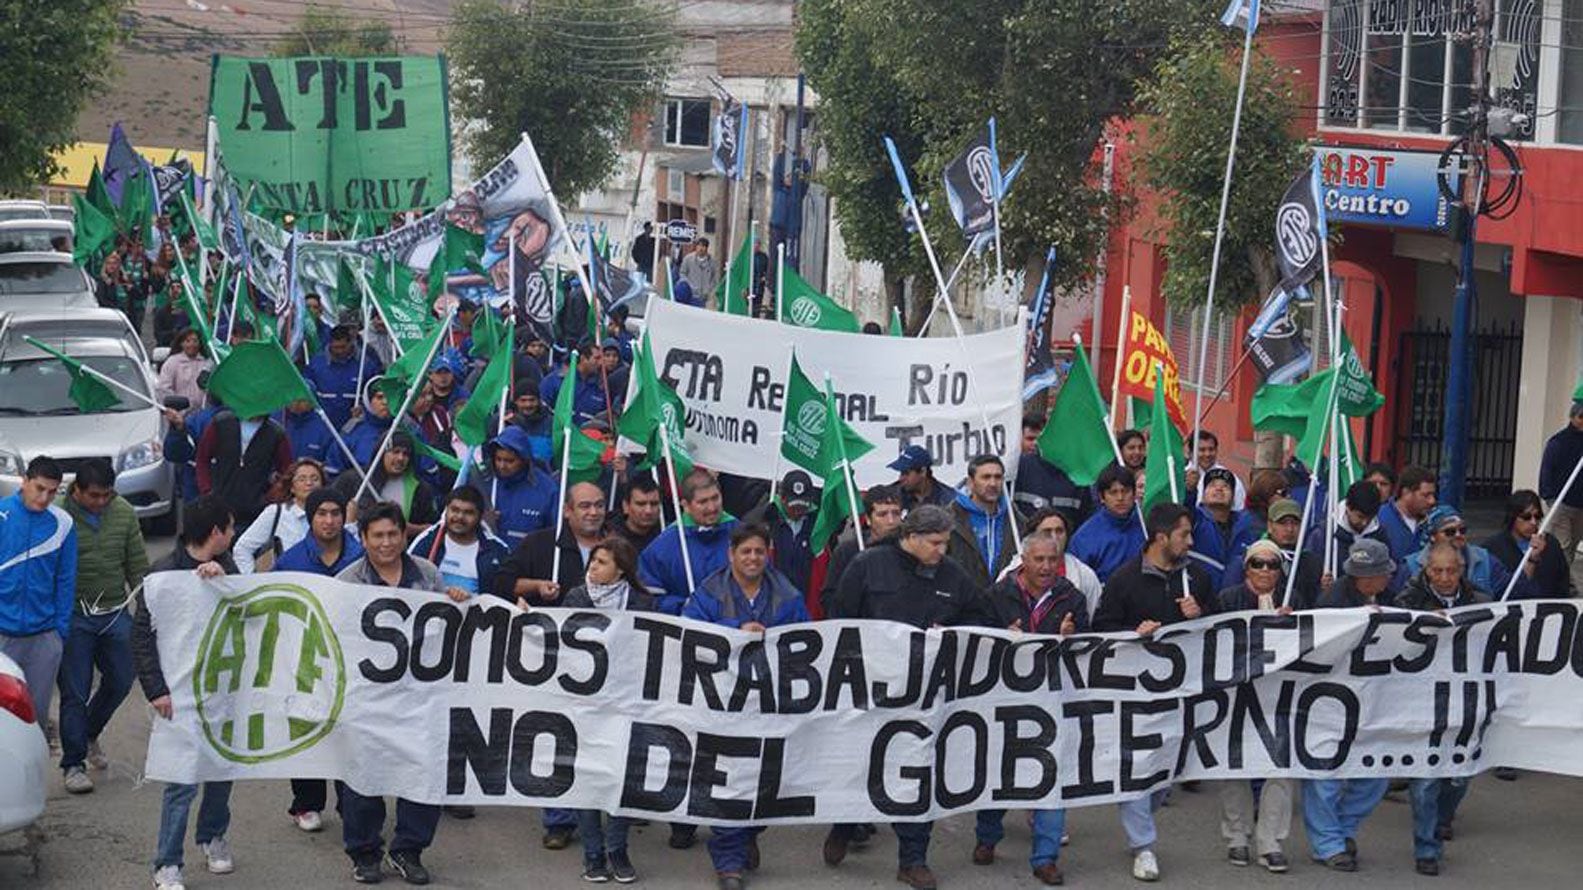 Una manifestación de la ATE, uno de los principales sindicatos de trabajadores estatales, en Santa Cruz